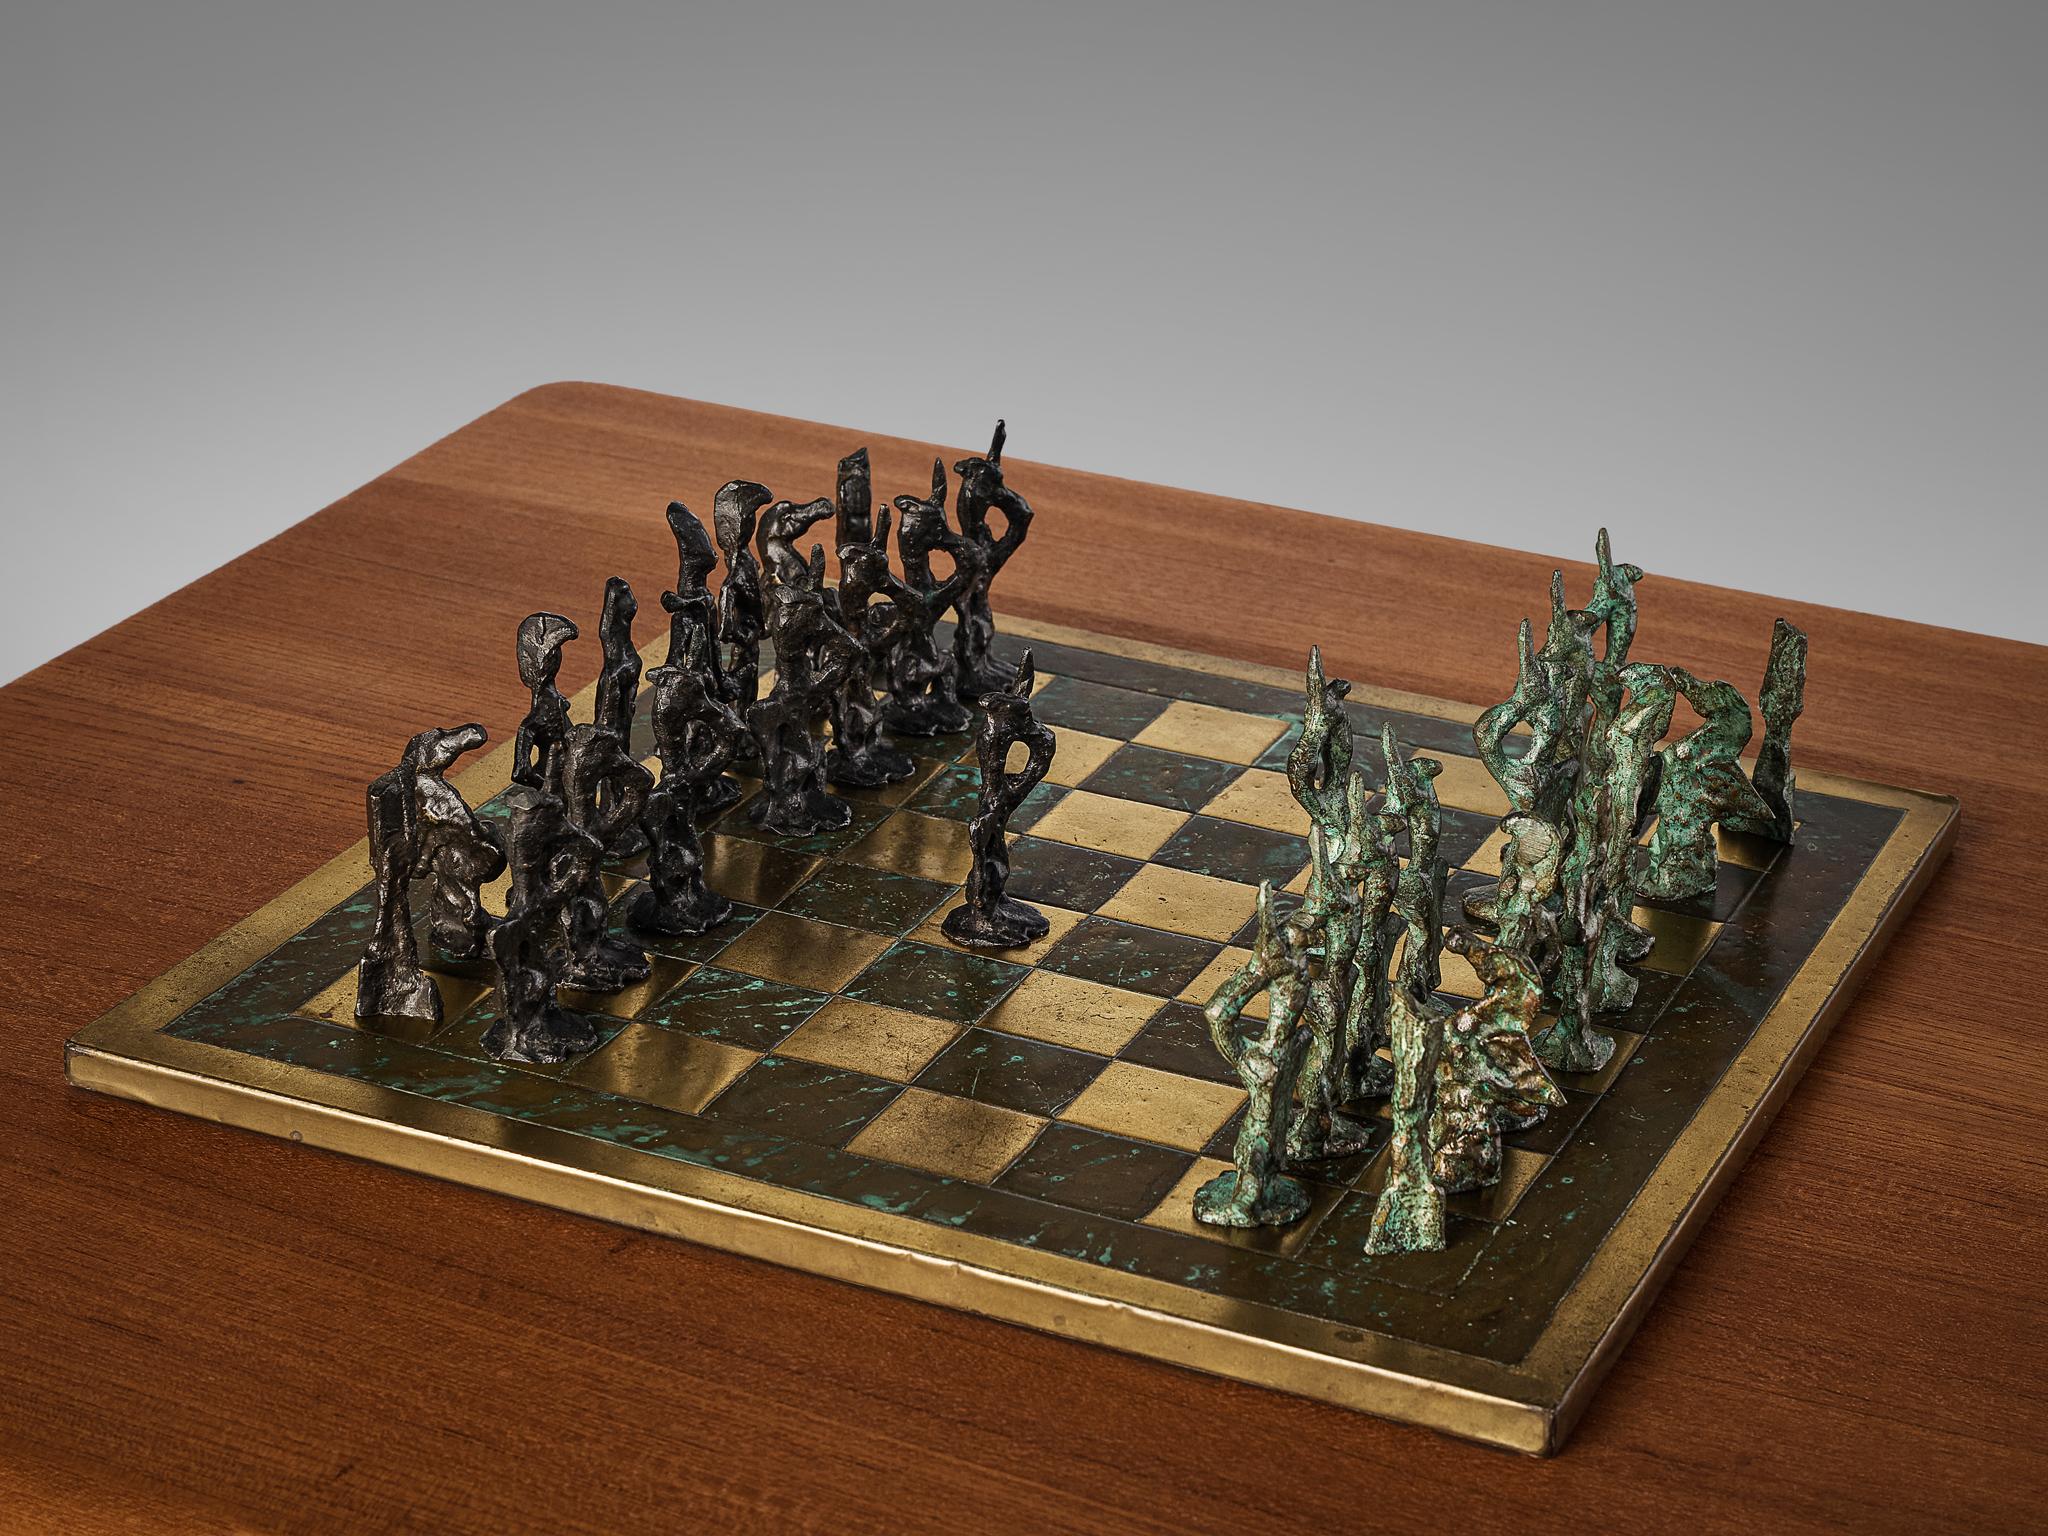 Schachspiel, Messing, Bronze, Italien, 1960er Jahre

Wunderschönes, modernistisches Schachspiel im Stil des italienischen Künstlers Alberto Giacometti. Das außergewöhnliche Schachspiel hat ein atemberaubendes Aussehen. Jedes Stück wird in Bronze